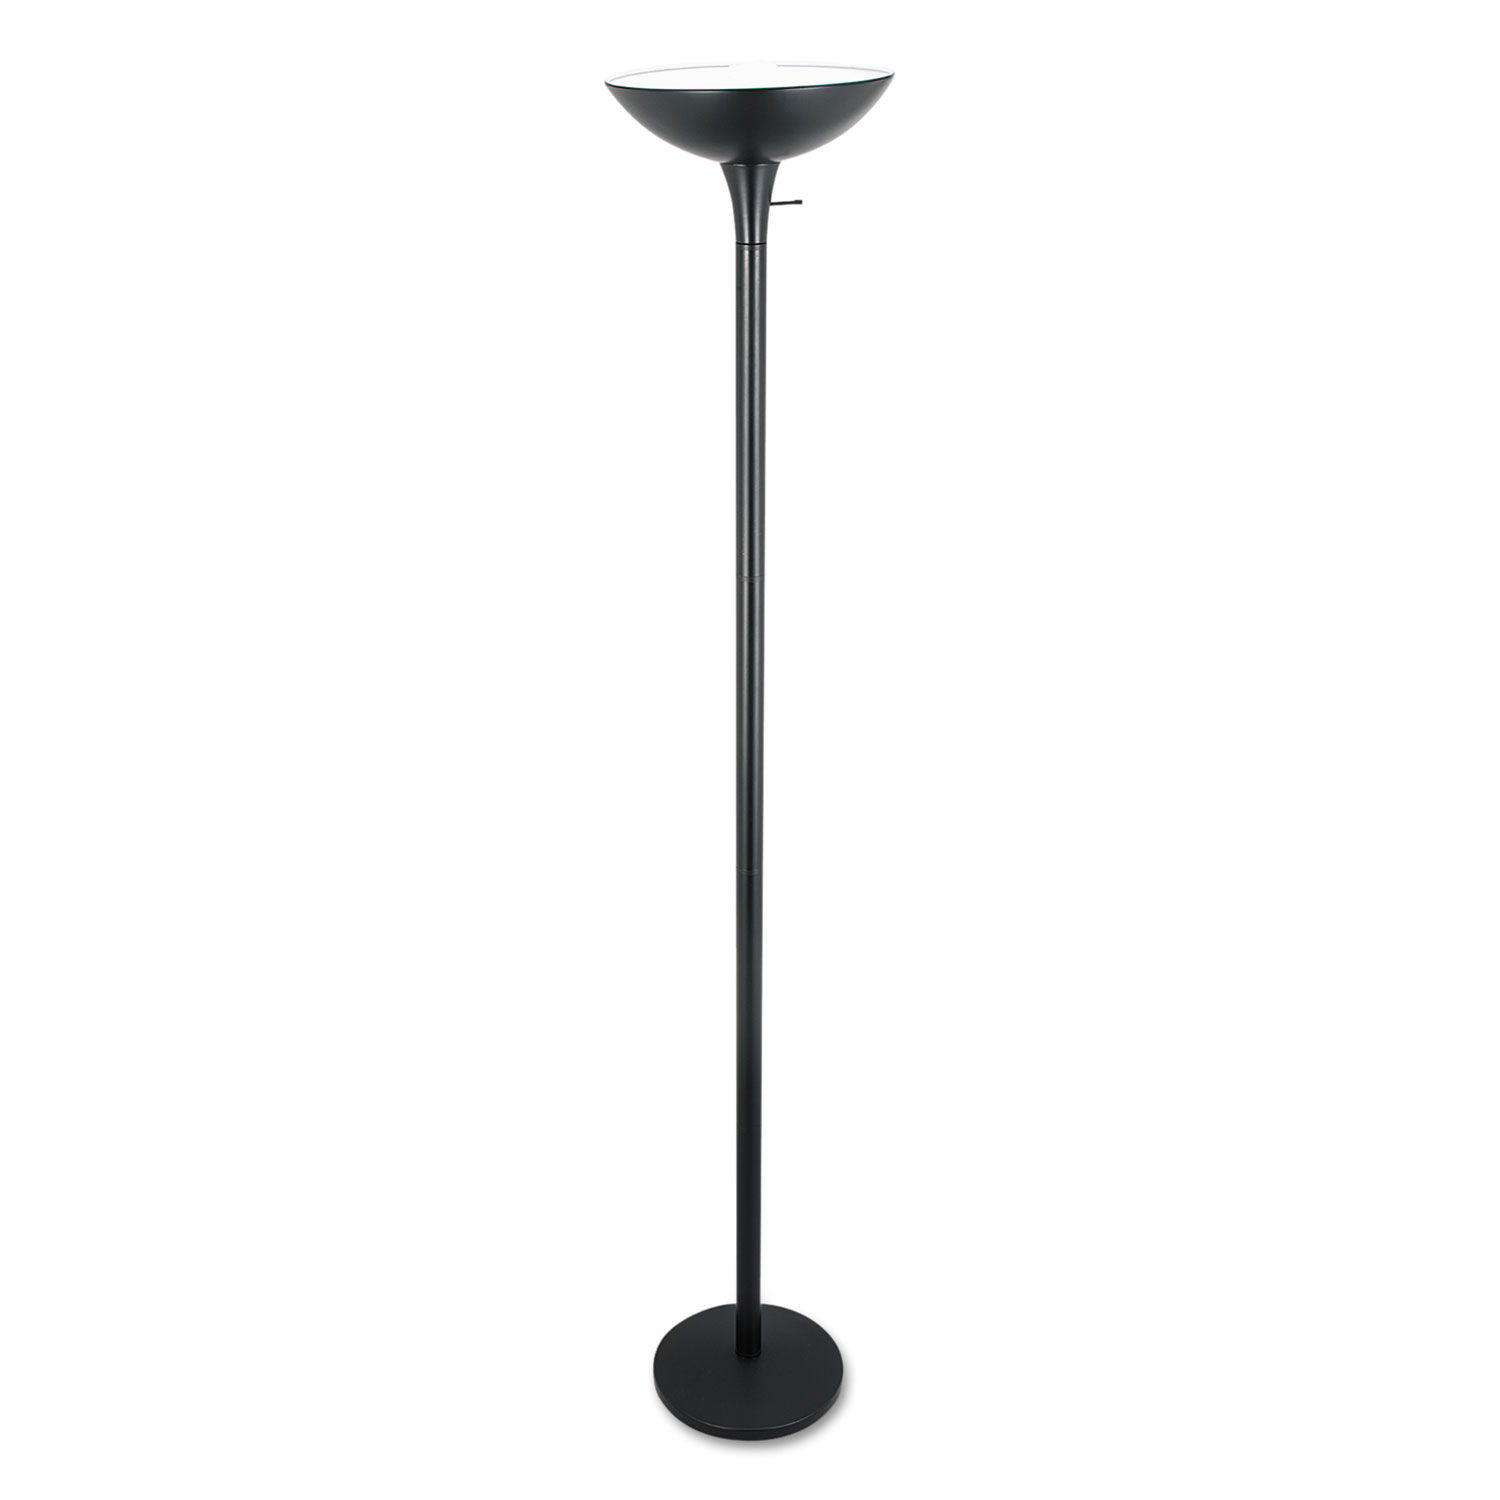 Torchier Floor Lamp, 12.5"w x 12.5"d x 72"h, Matte Black